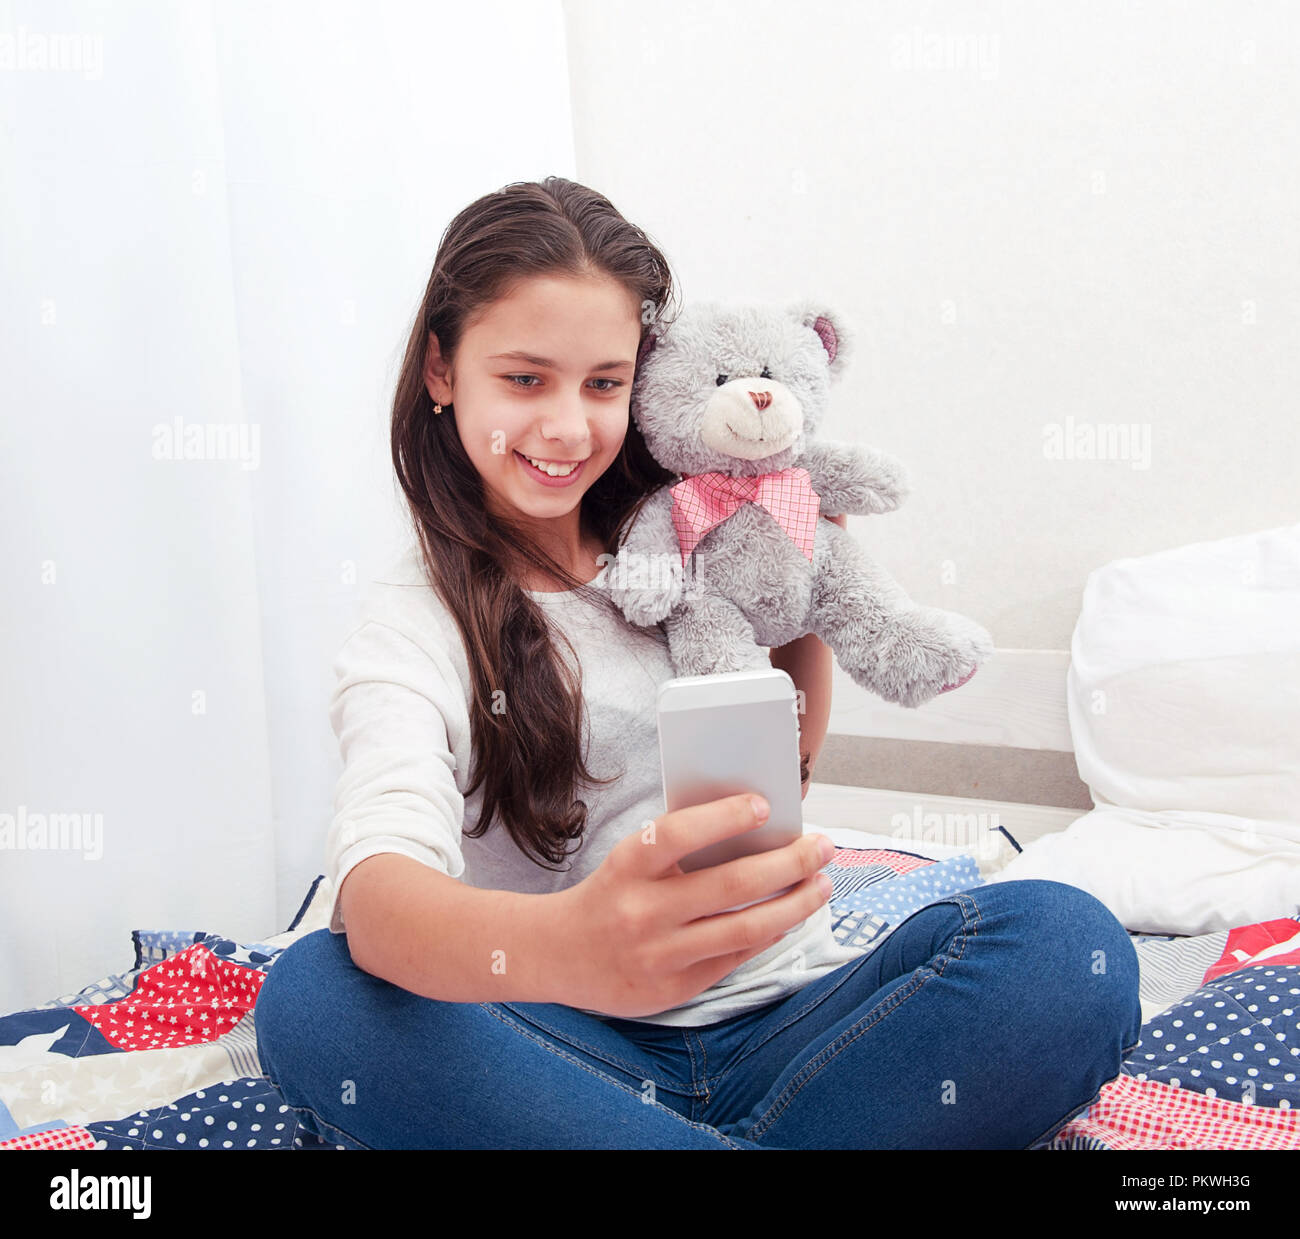 La niña sentada en la cama hace selfie con un oso de peluche Fotografía de  stock - Alamy